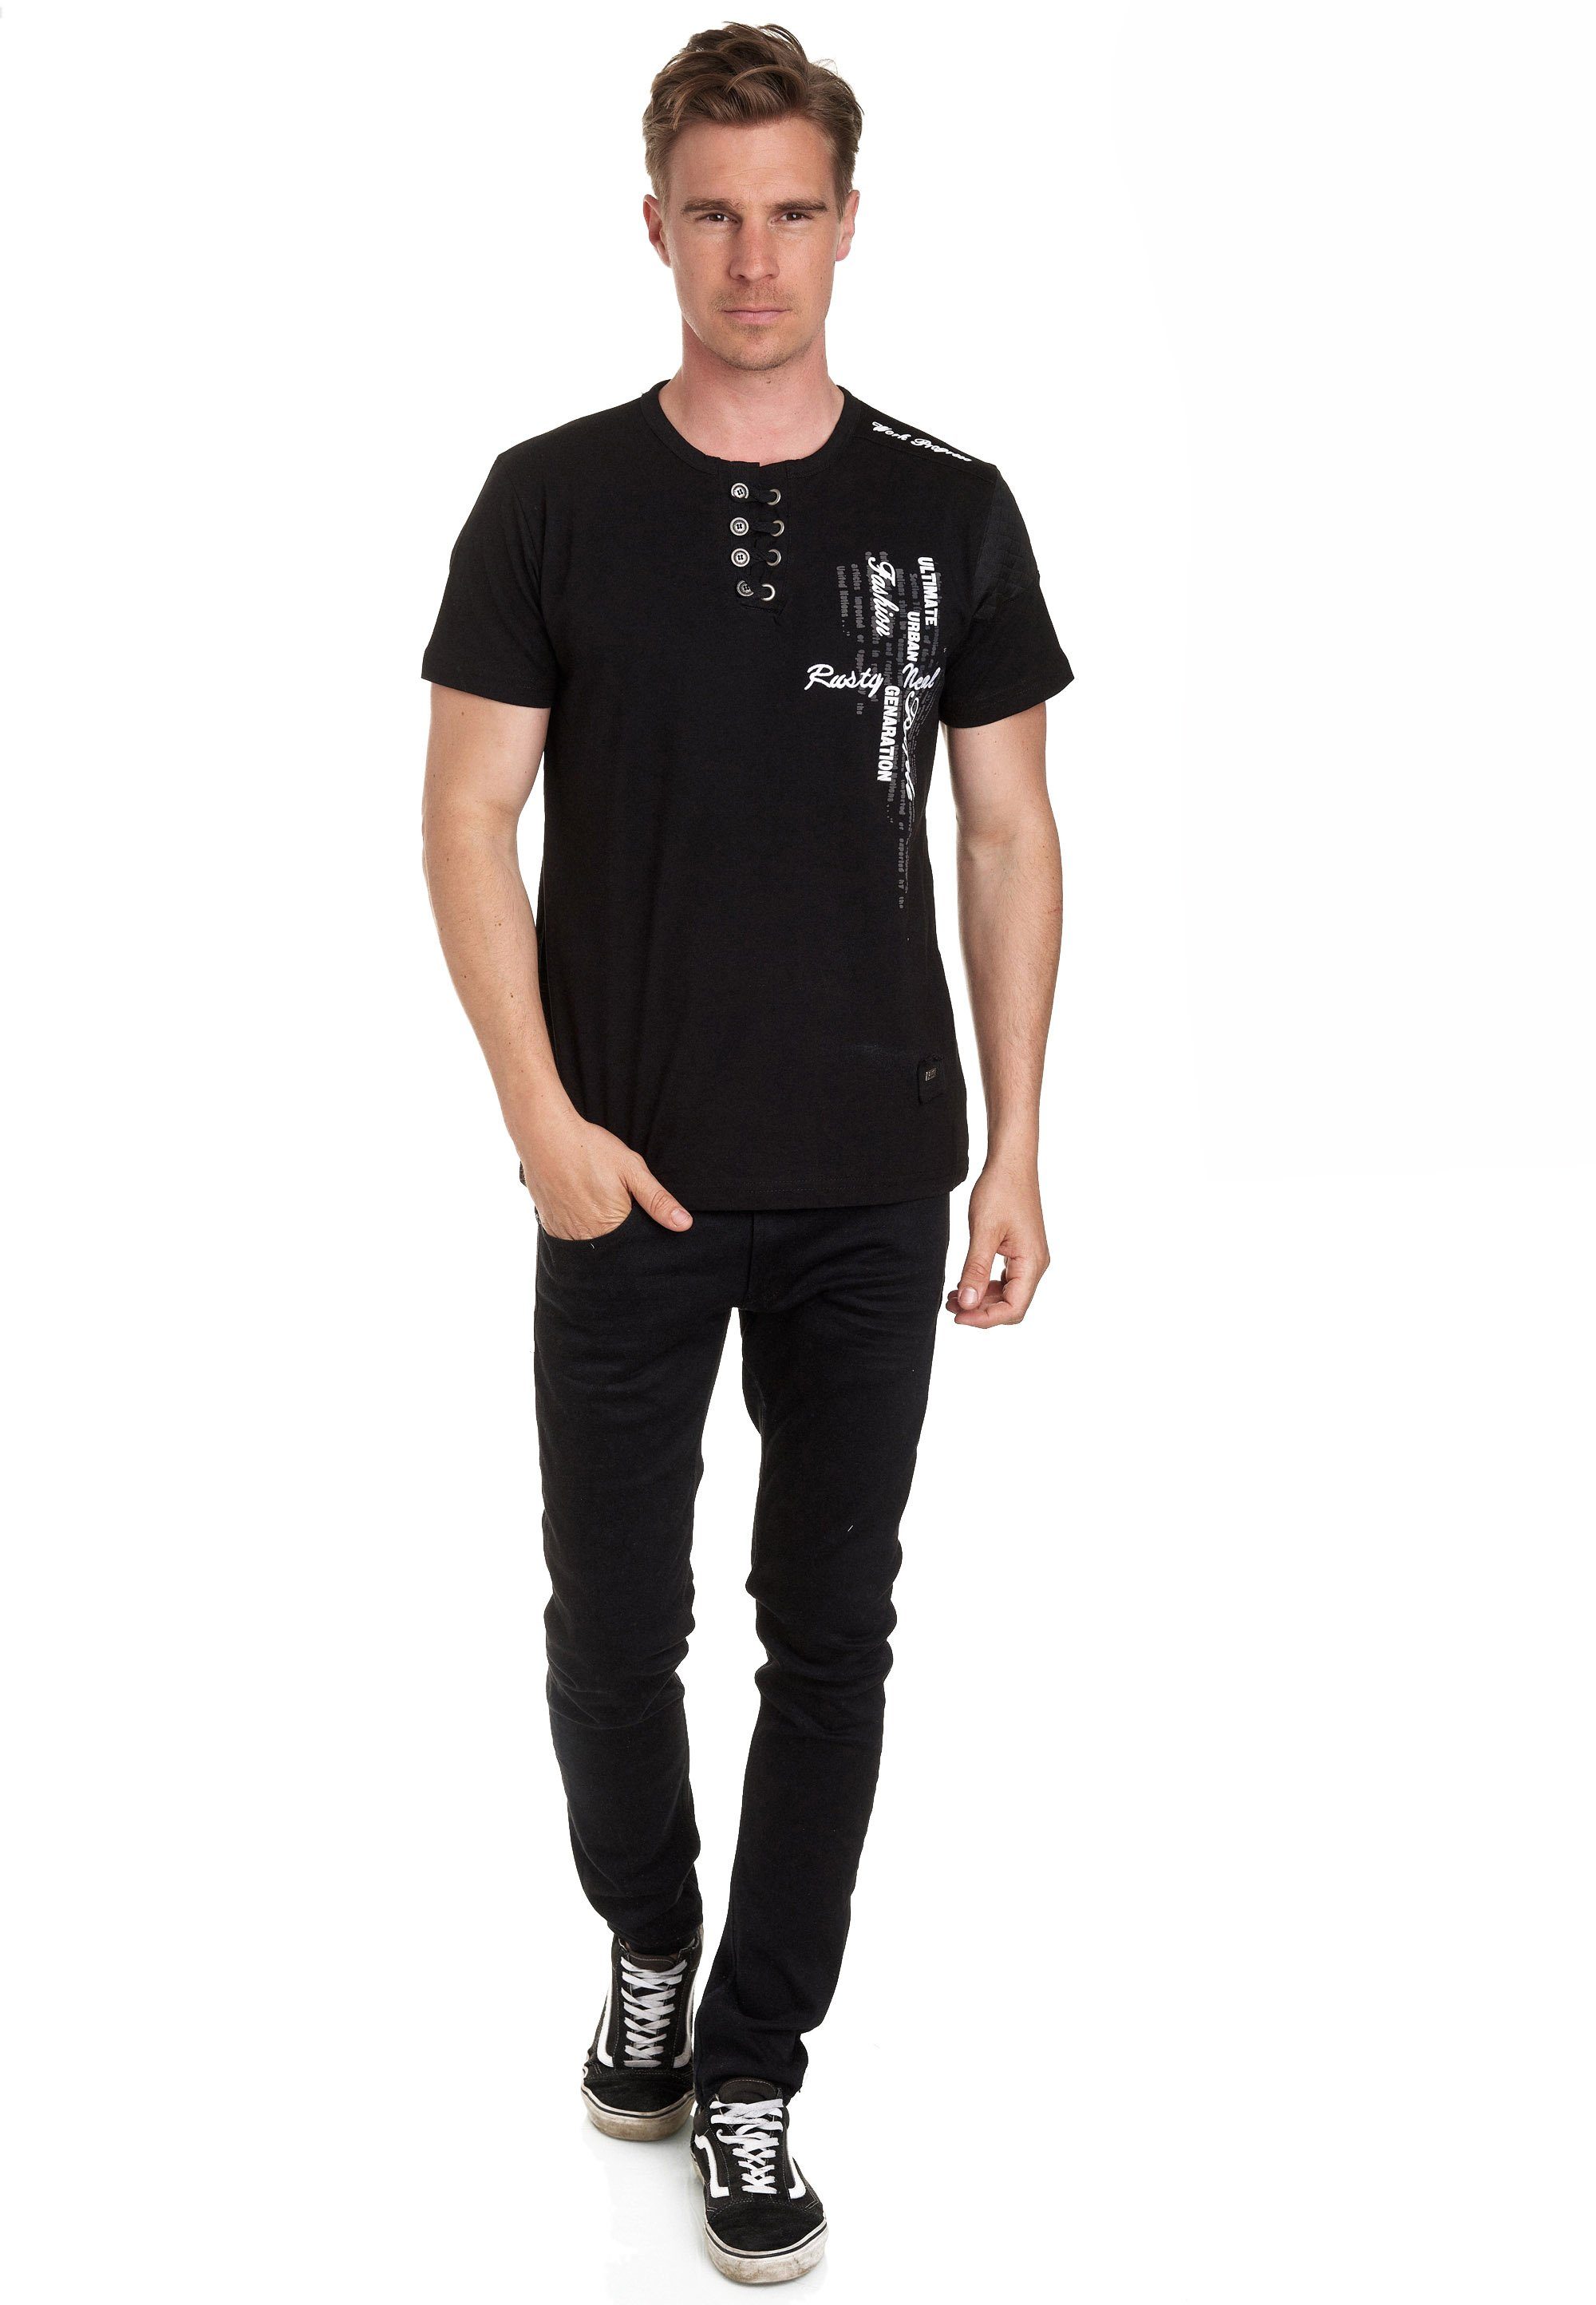 Rusty Neal T-Shirt mit schicker Knopfleiste schwarz